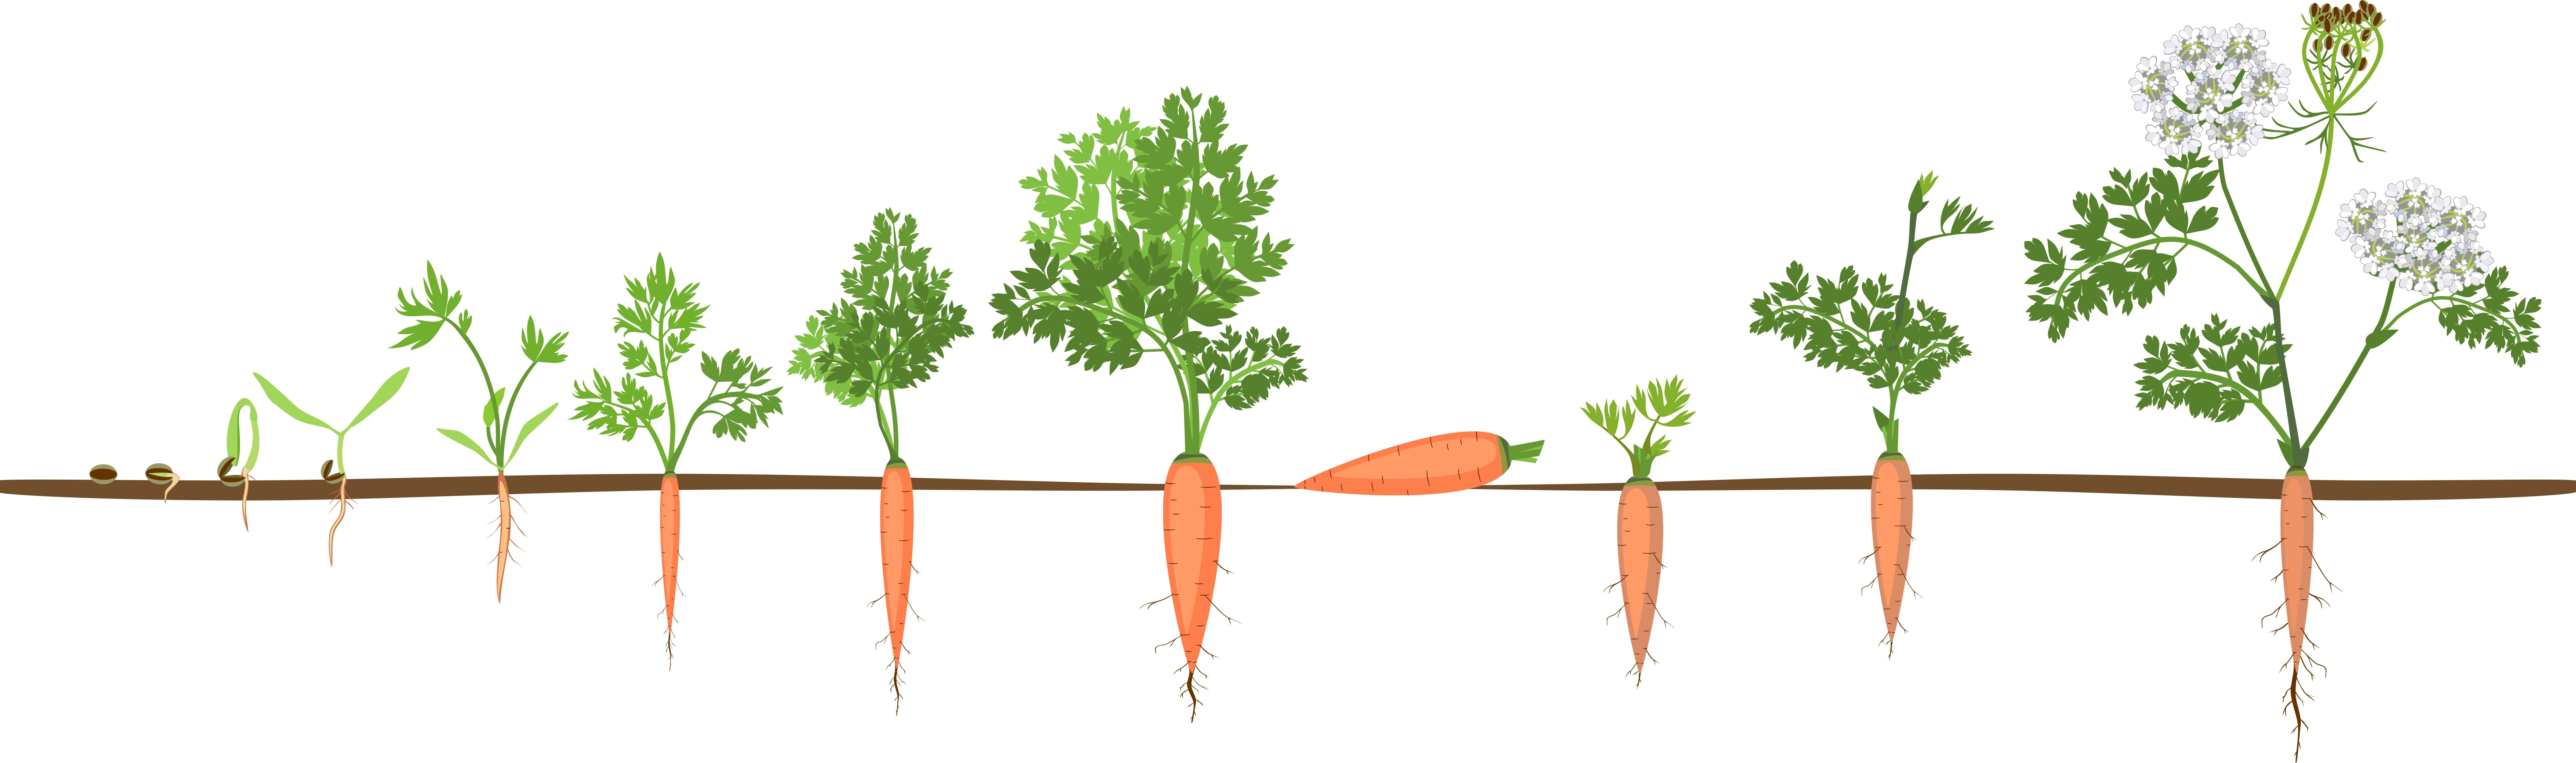 Морковь группа растений